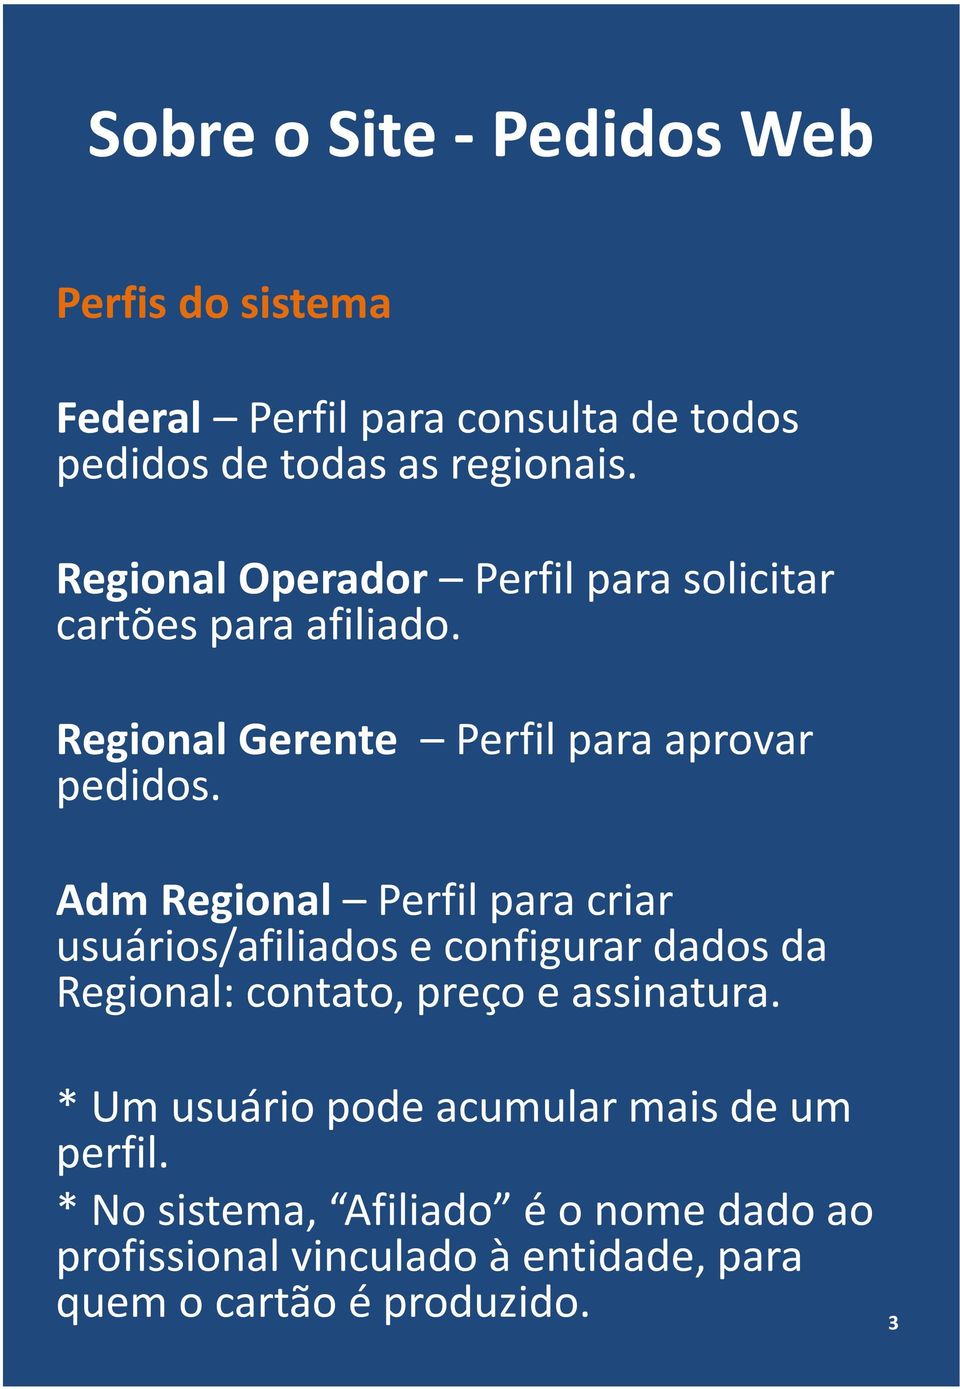 AdmRegional Perfil para criar usuários/afiliados e configurar dados da Regional: contato, preço e assinatura.